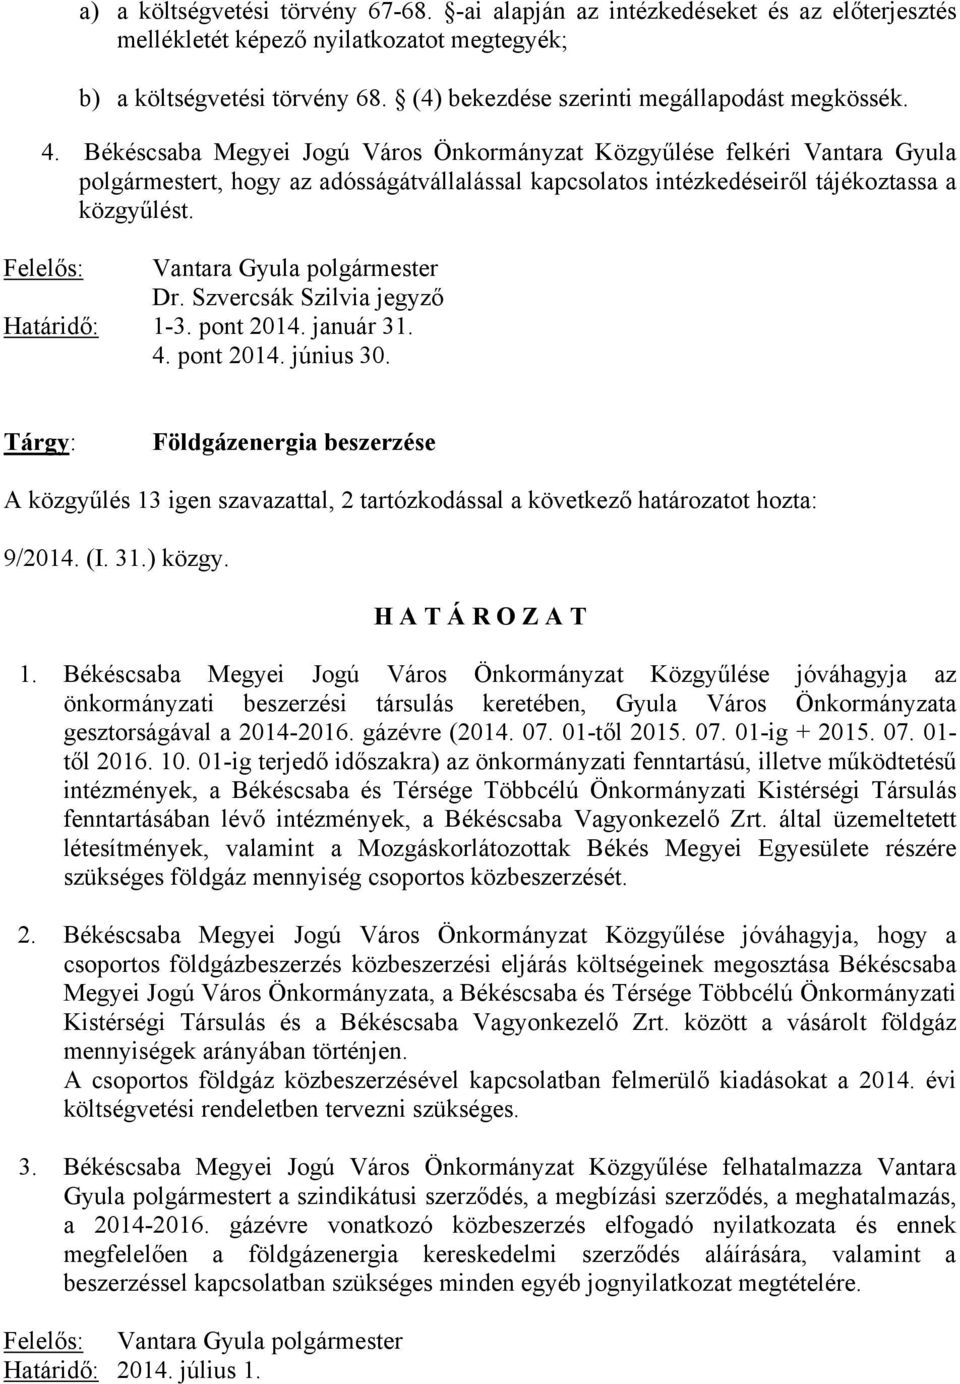 Békéscsaba Megyei Jogú Város Önkormányzat Közgyűlése felkéri Vantara Gyula polgármestert, hogy az adósságátvállalással kapcsolatos intézkedéseiről tájékoztassa a közgyűlést.